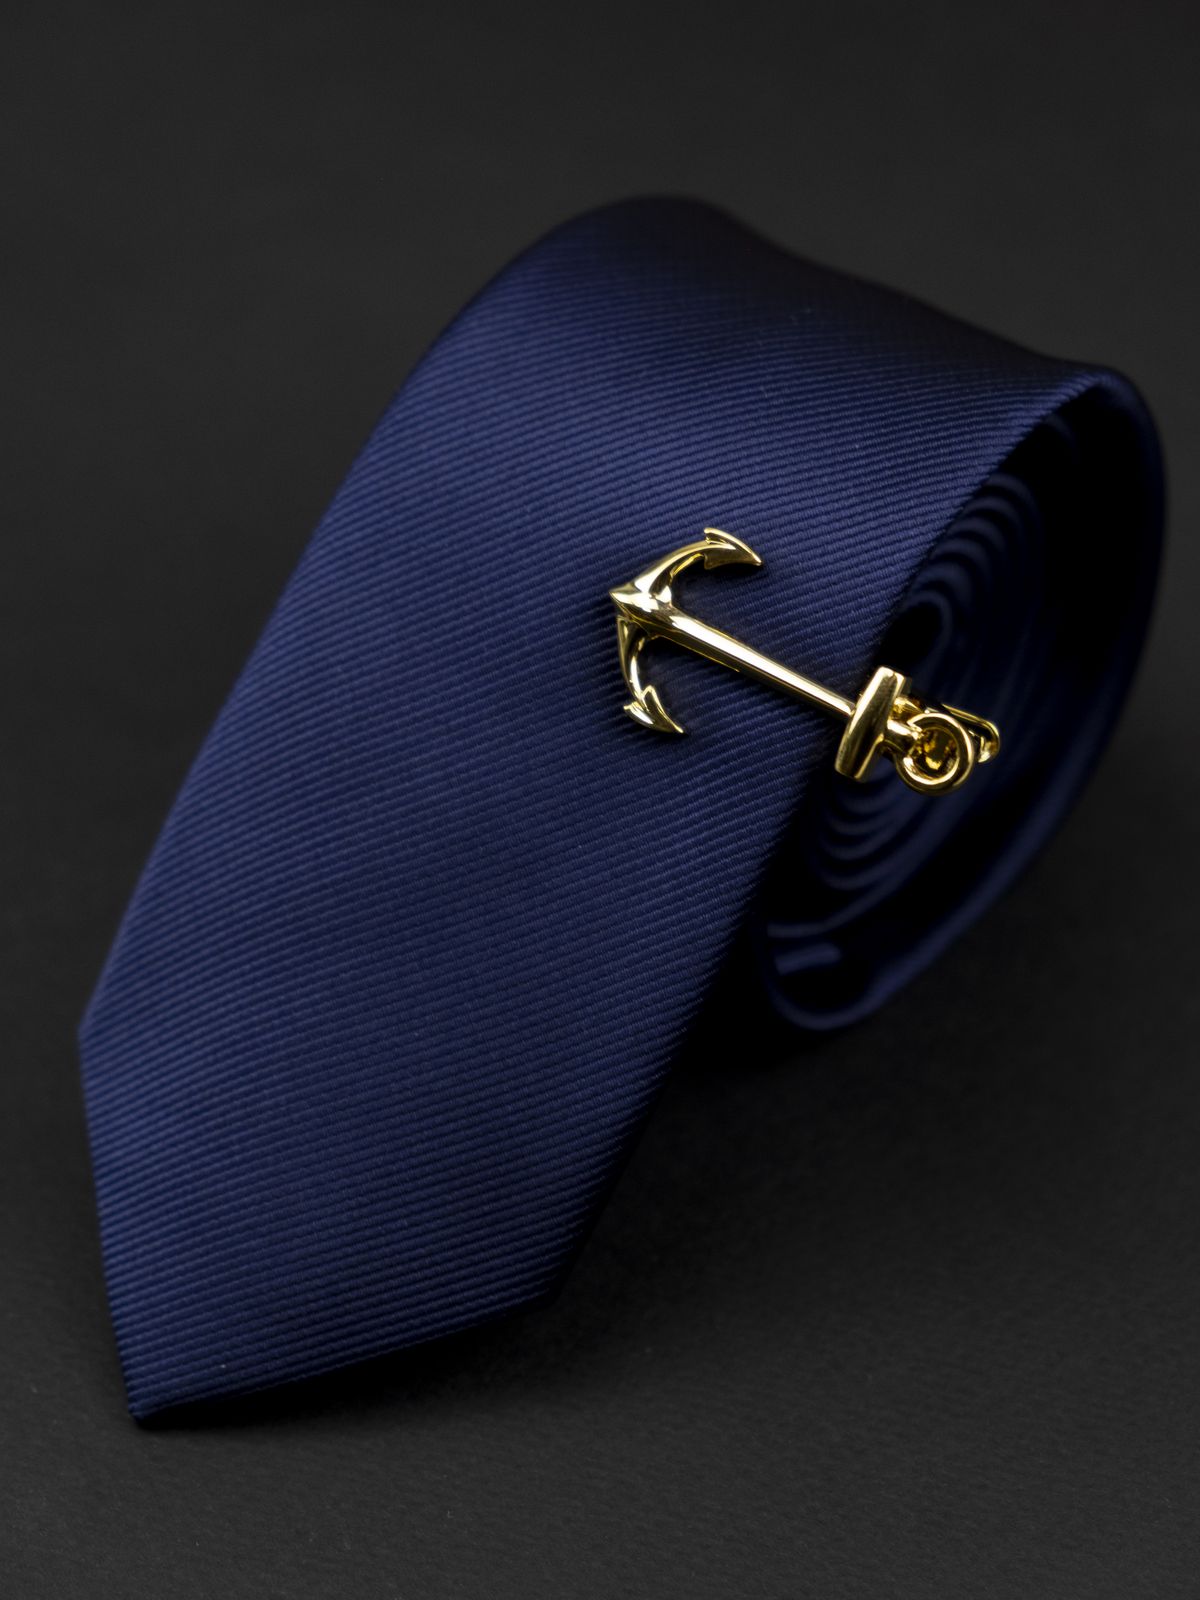 Зажим для галстука золотой якорь купить. Состав: Ювелирная сталь 316L, Цвет: Золотой, Габариты: 2 см. х 4 см.	, Вес: 8 гр.; 